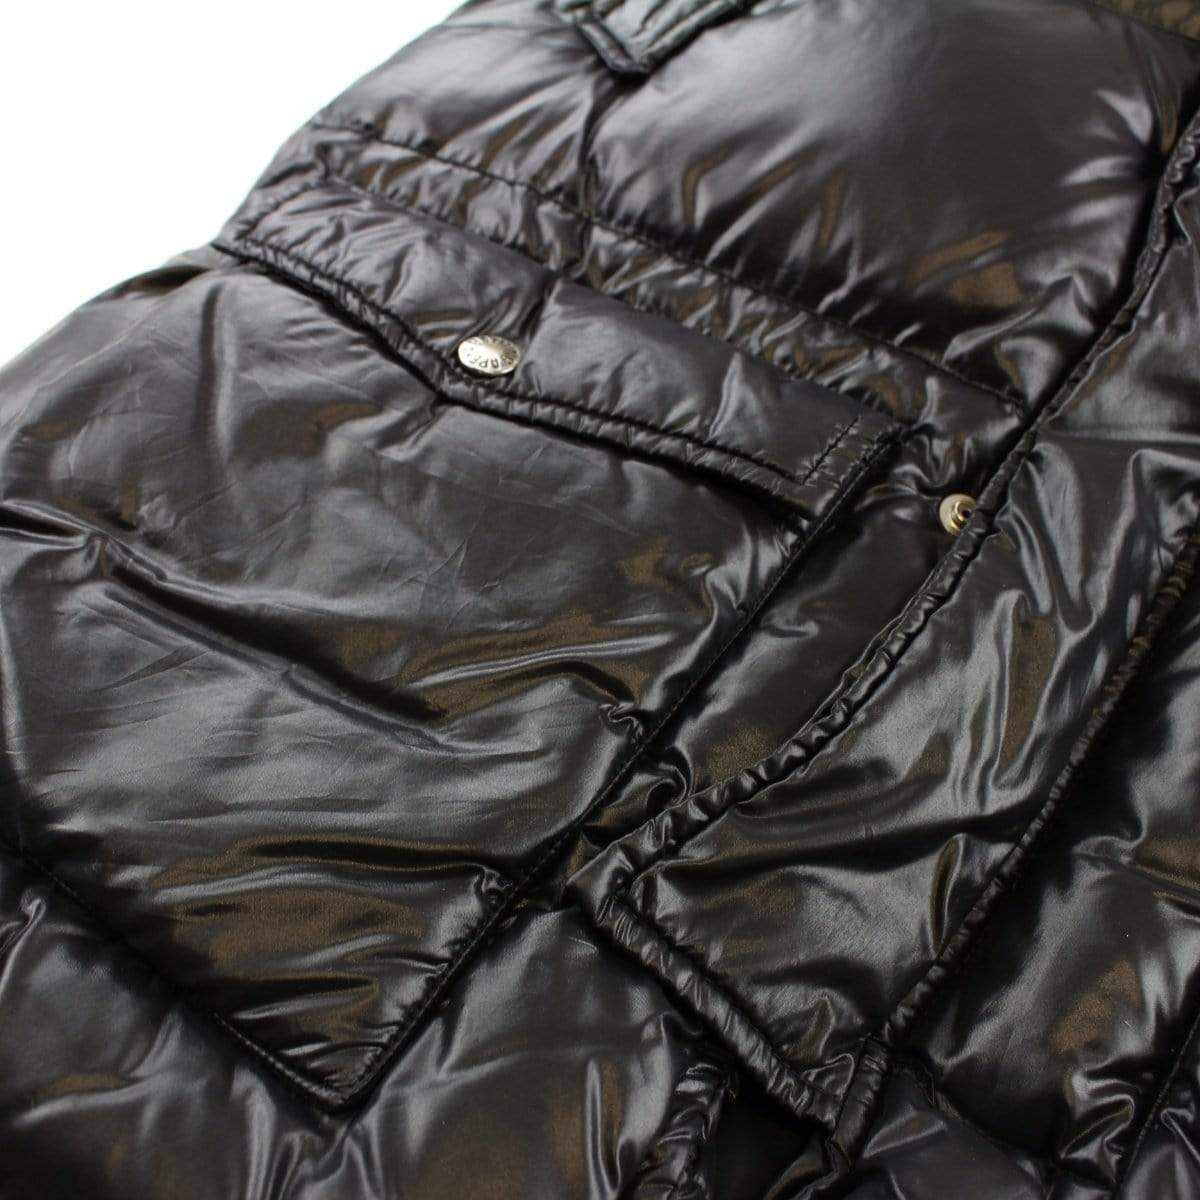 Bape Shiny Puffer Jacket Fur Hood Black - SaruGeneral